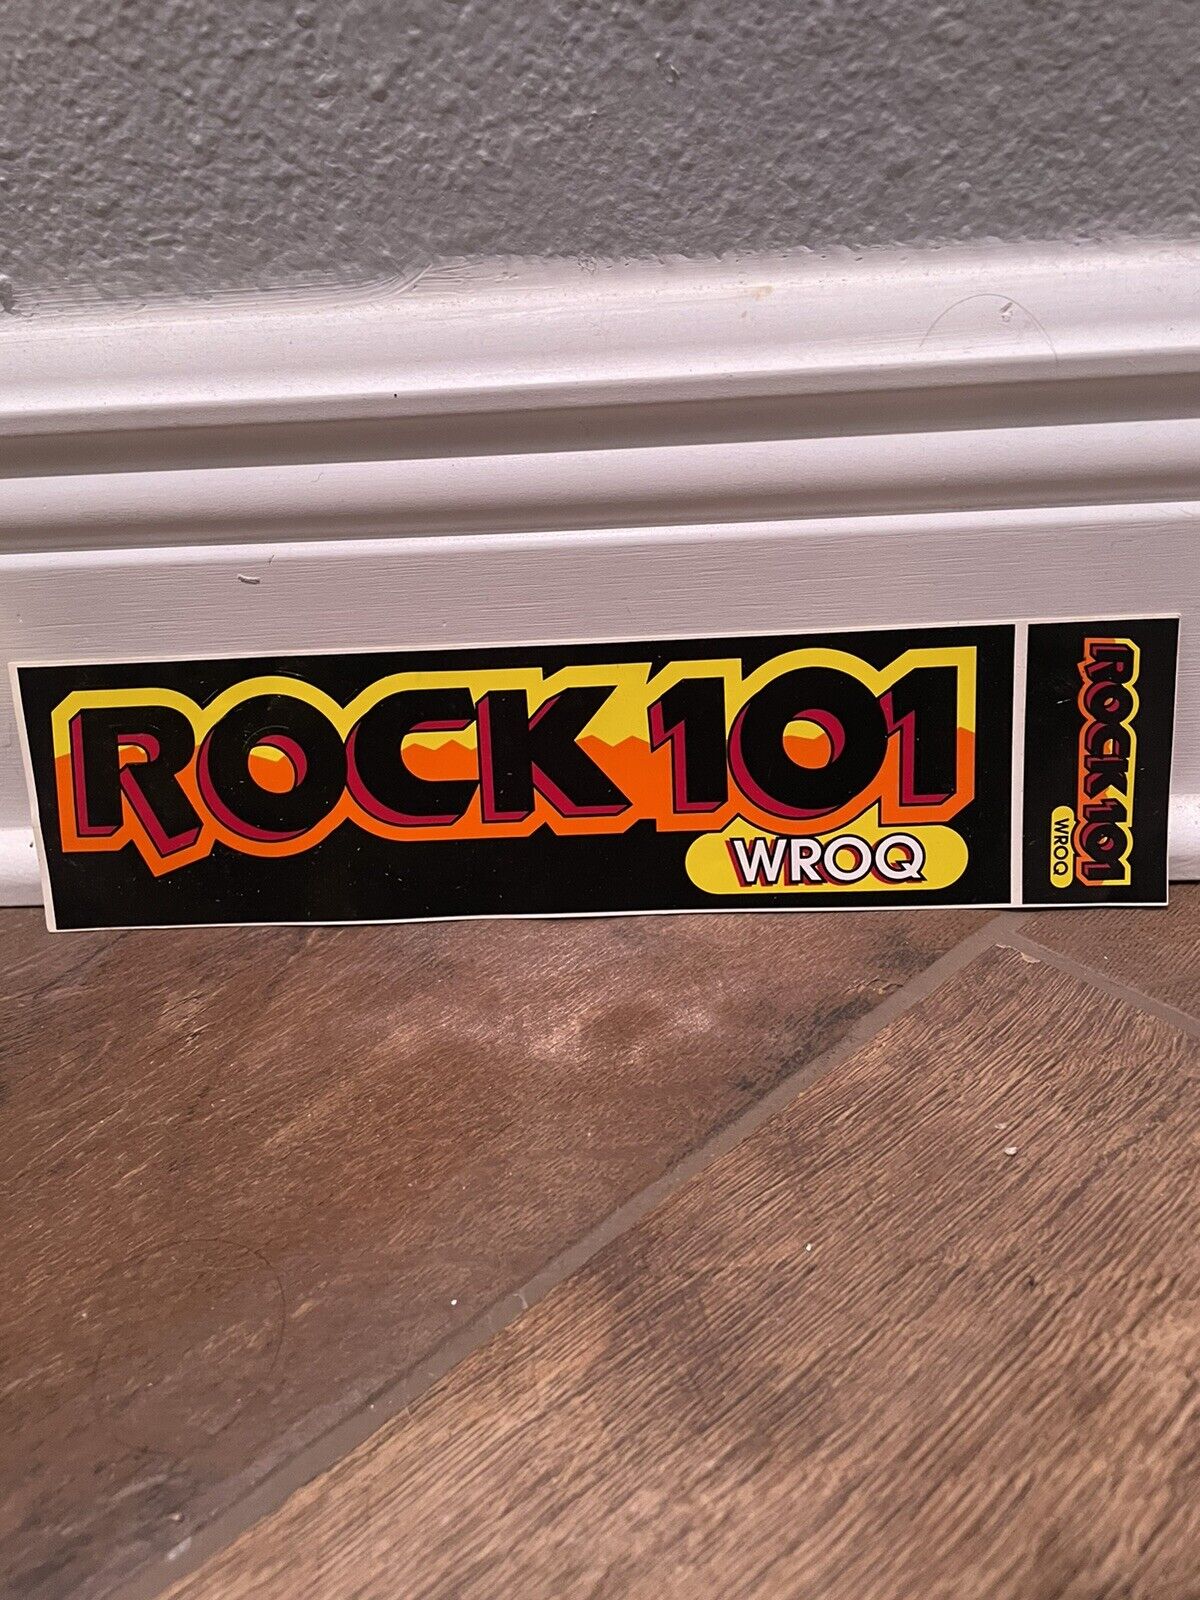 WROQ Rock 101 Anderson Greenville SC Bumper Sticker